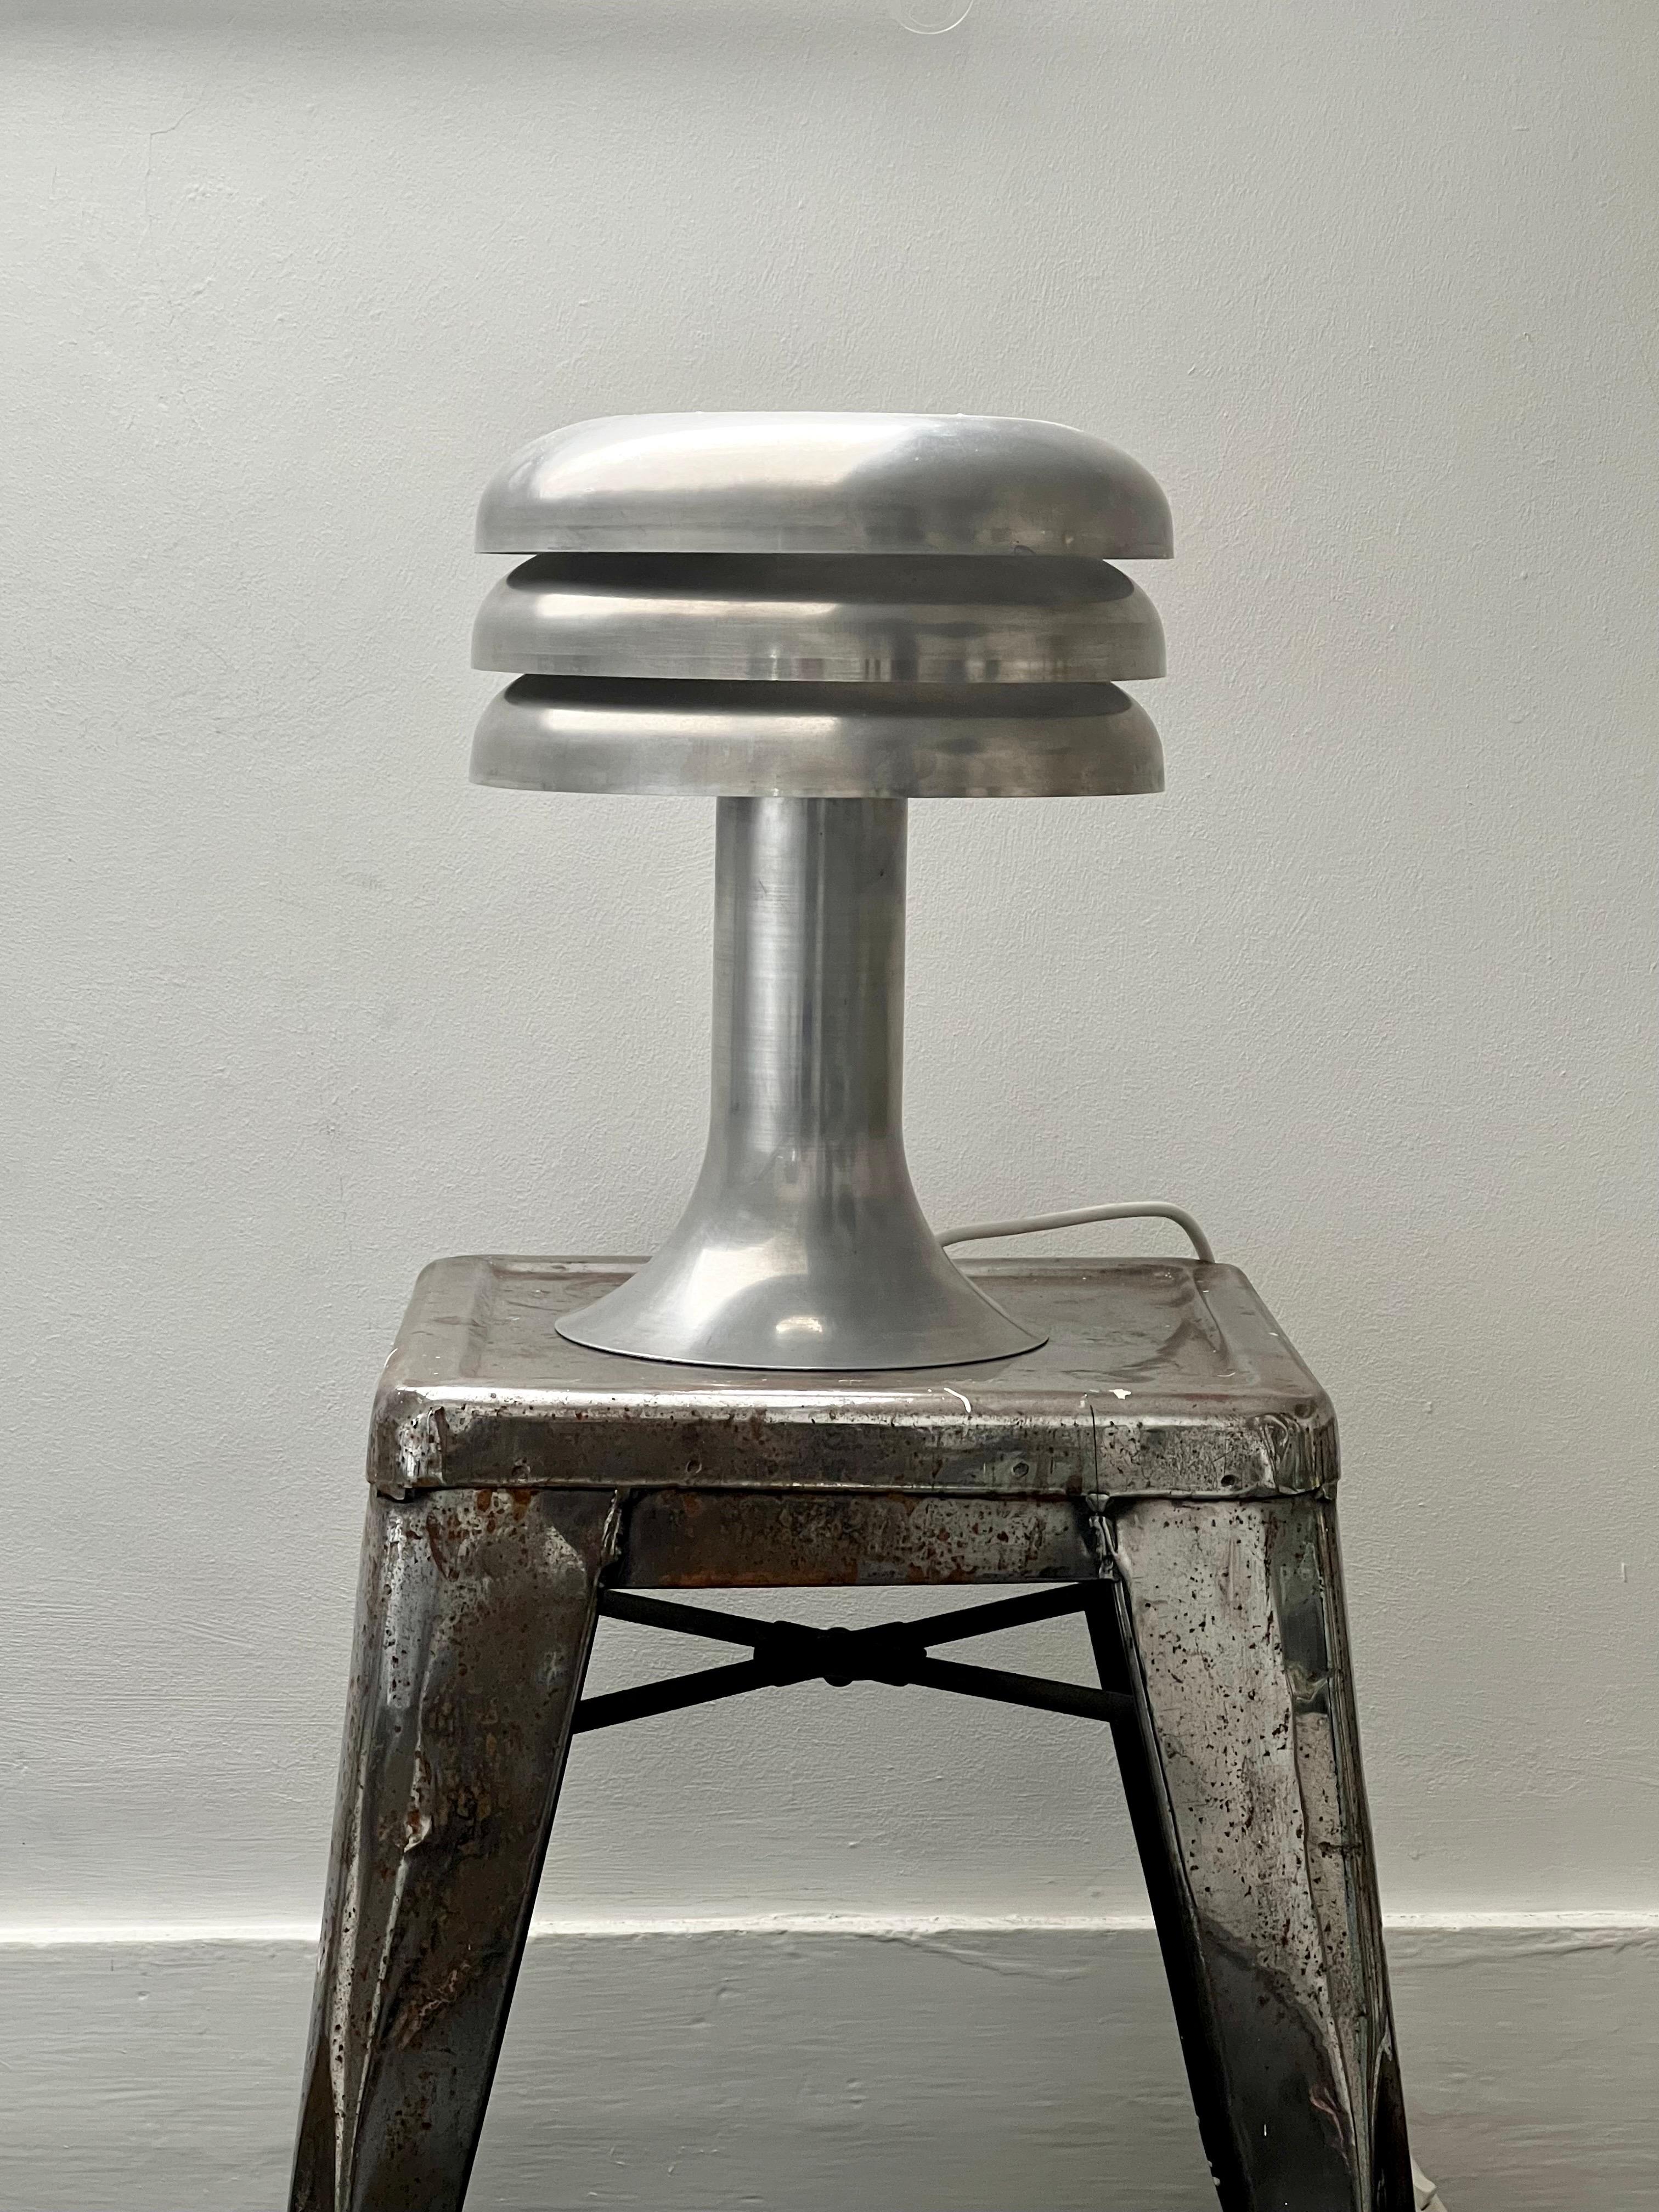 Lampe de table modèle BN-25 par Hans Agnes Jakobsson, Suède, années 1960. 

Lampe en aluminium filé avec abat-jour intégré à trois niveaux (blanc à l'intérieur) donnant une belle lumière d'ambiance. La lampe est en bon état vintage. Il a été remis à